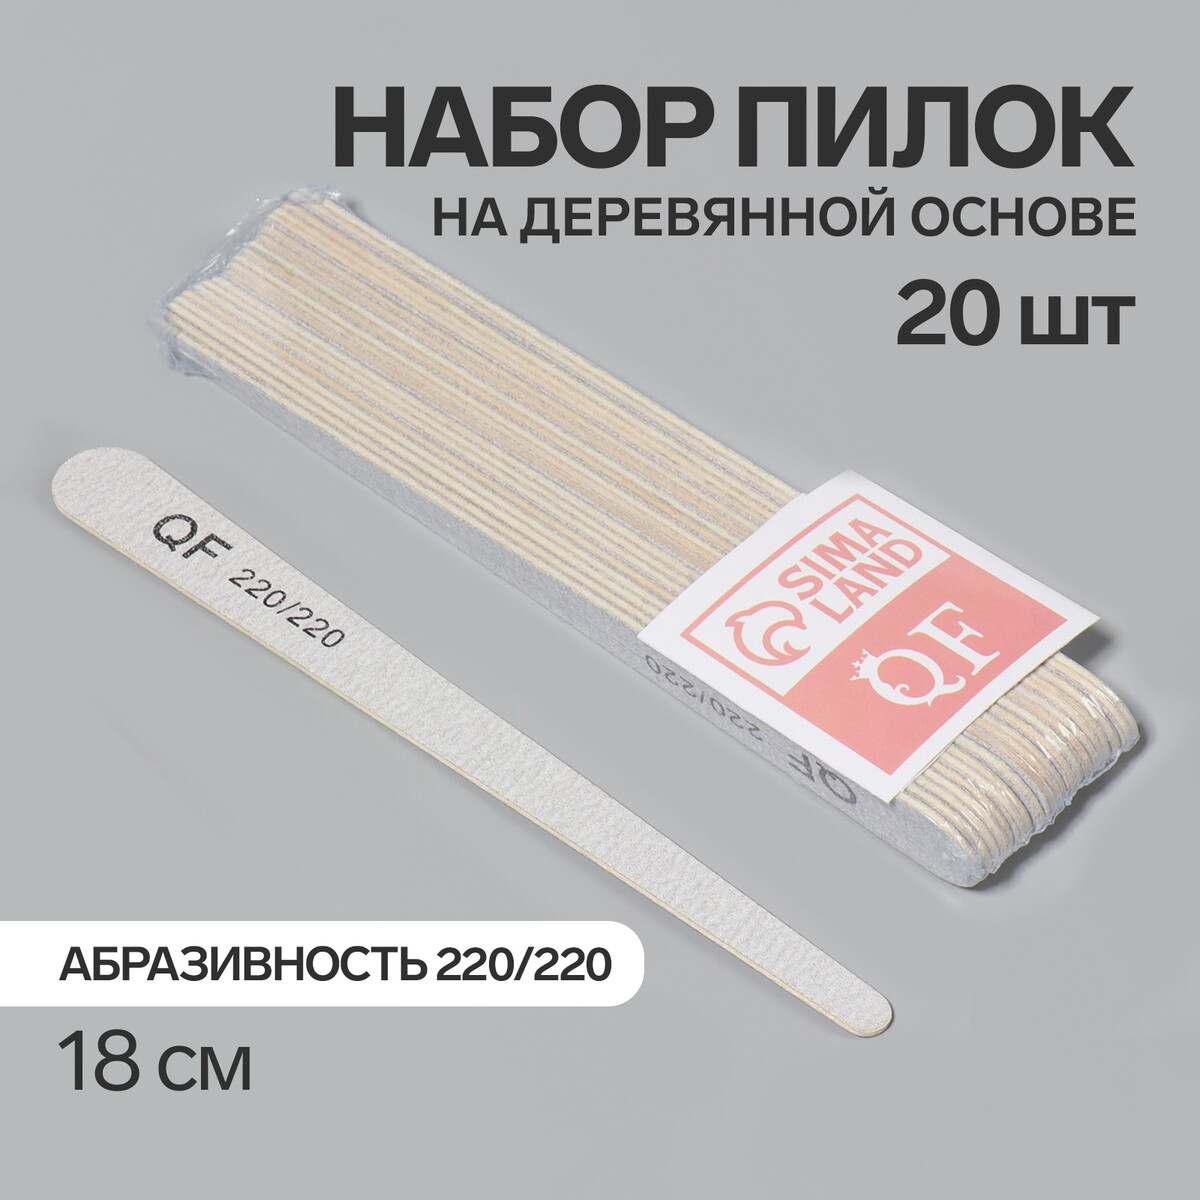 Пилка-наждак, набор 20 шт, деревянная основа, абразивность 220/220, 18 см, цвет серый палка основа для макраме деревянная без покрытия d 1 × 40 см